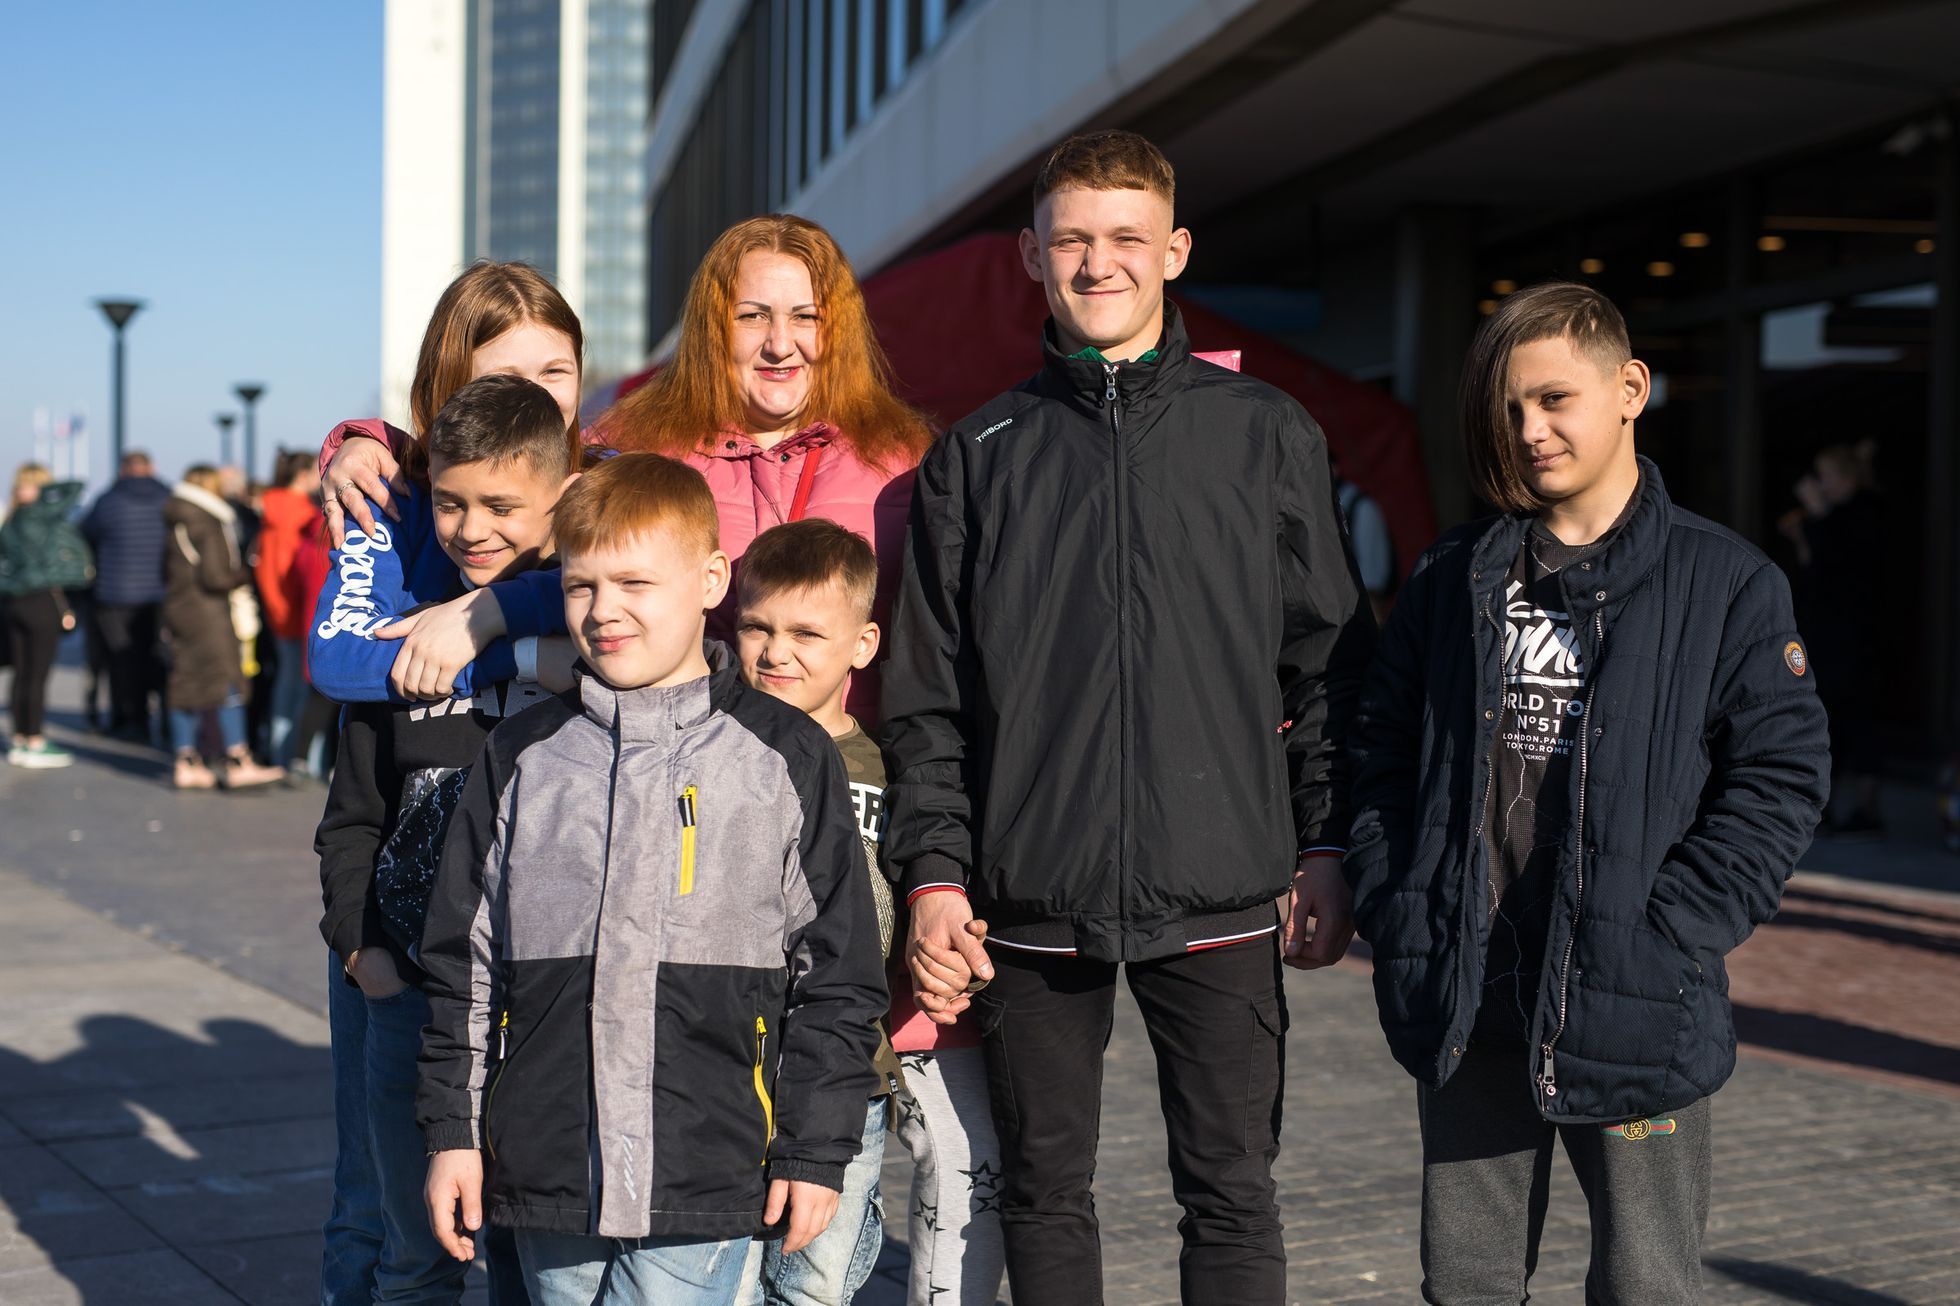 Ukrajinští uprchlíci v Kongresové centrum v Praze - uprchlické centrum